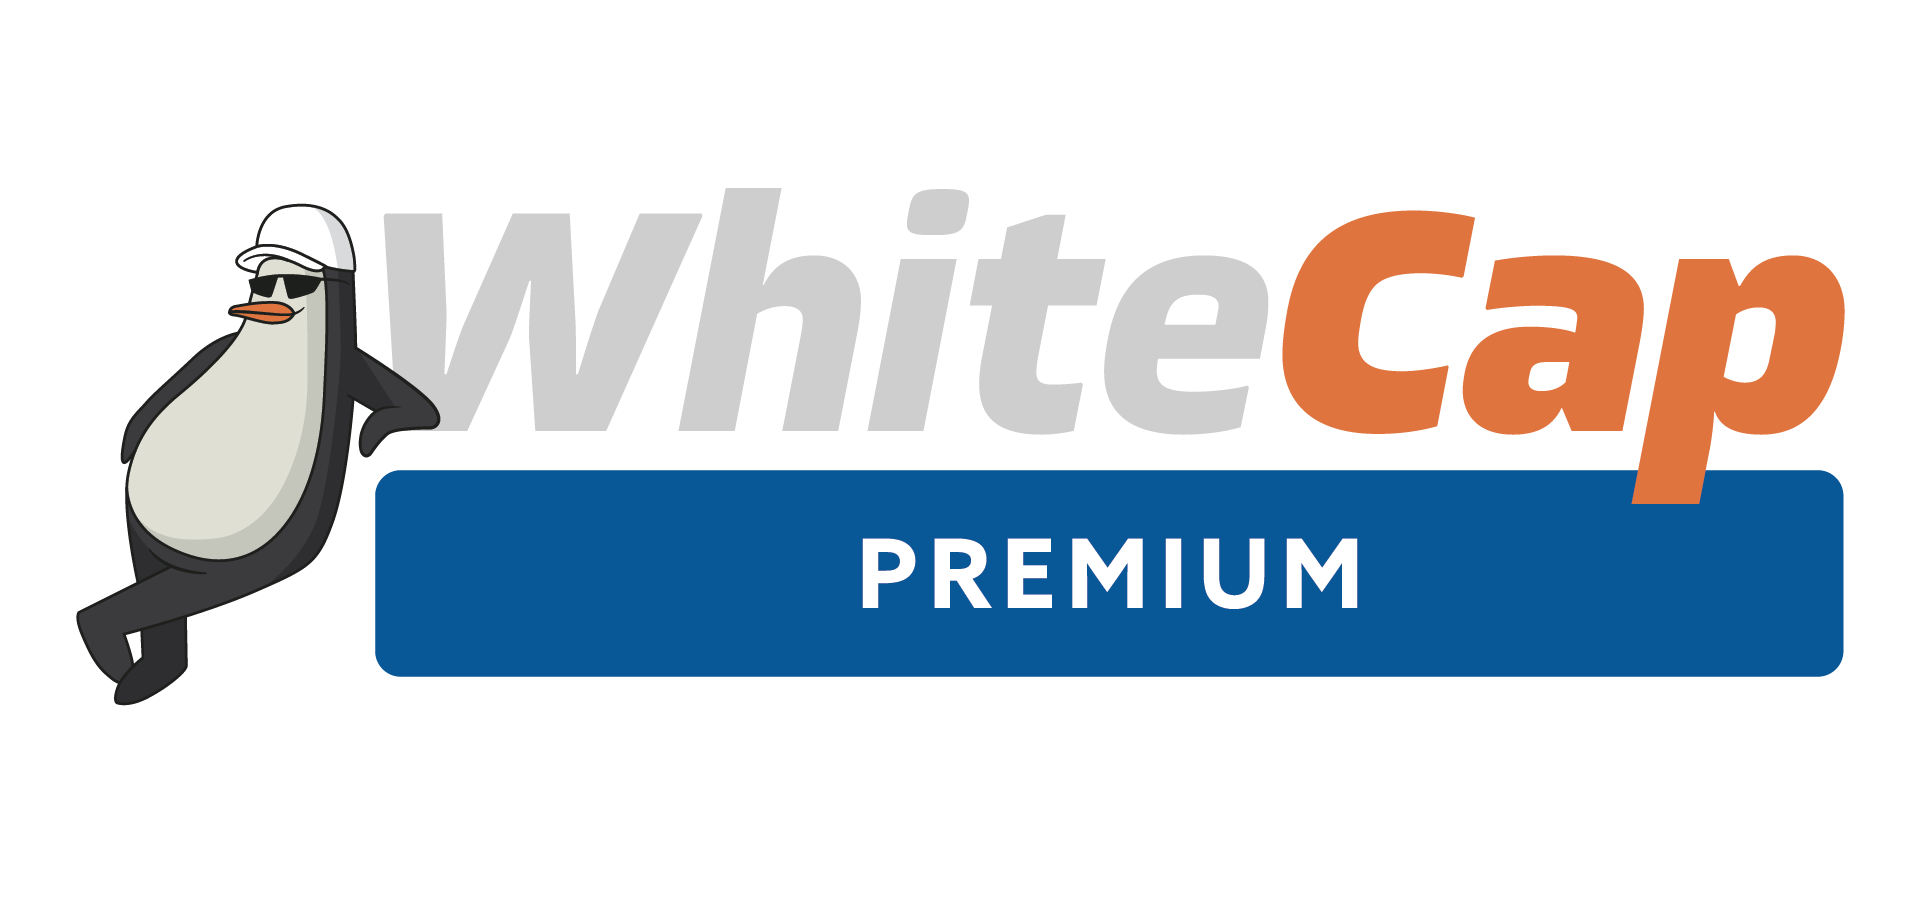 WhiteCap PREMIUM 12 mil liner 12X100 WW